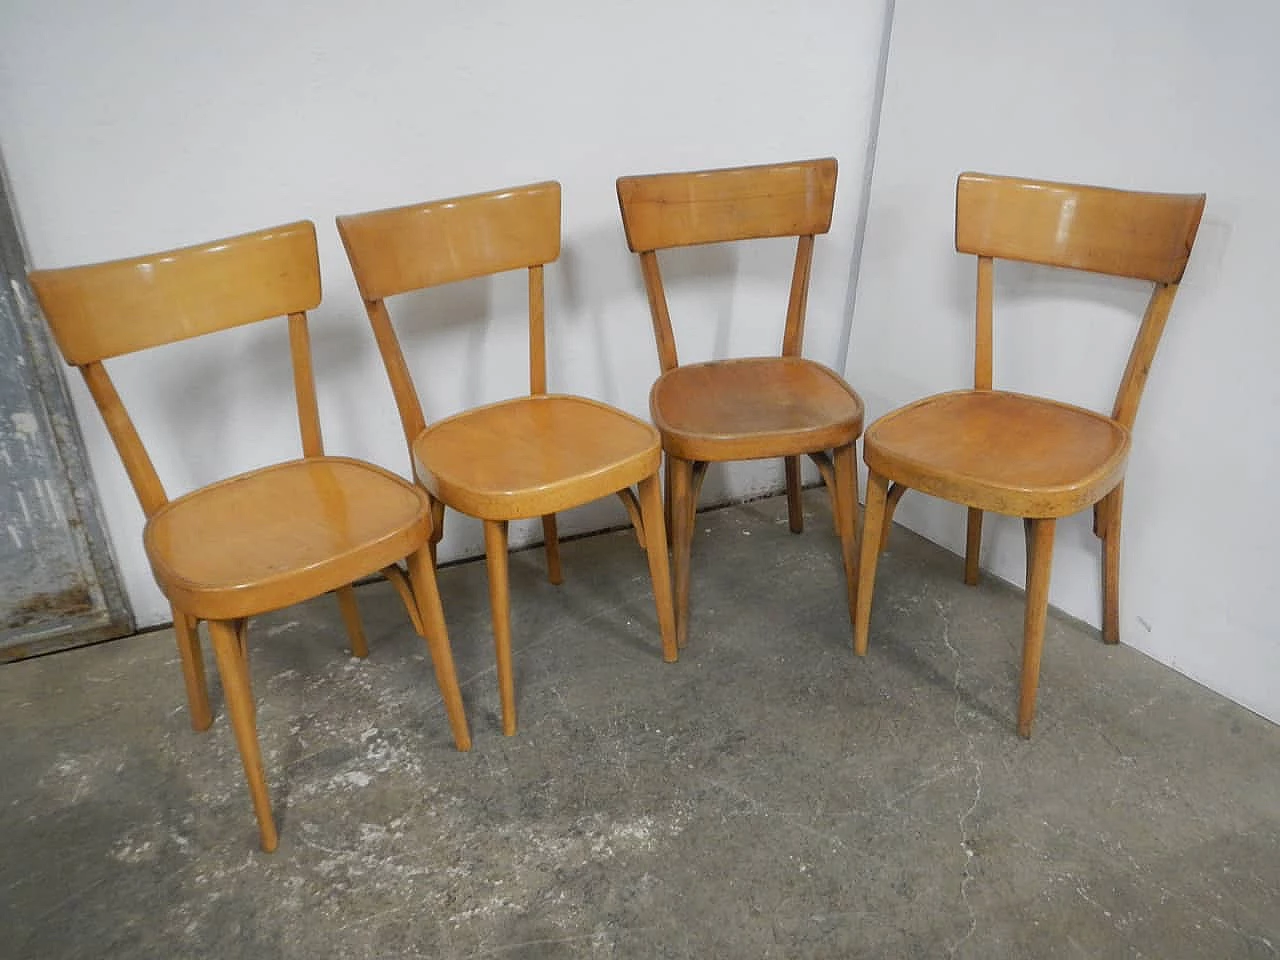 4 Beech chairs, 1950s 1